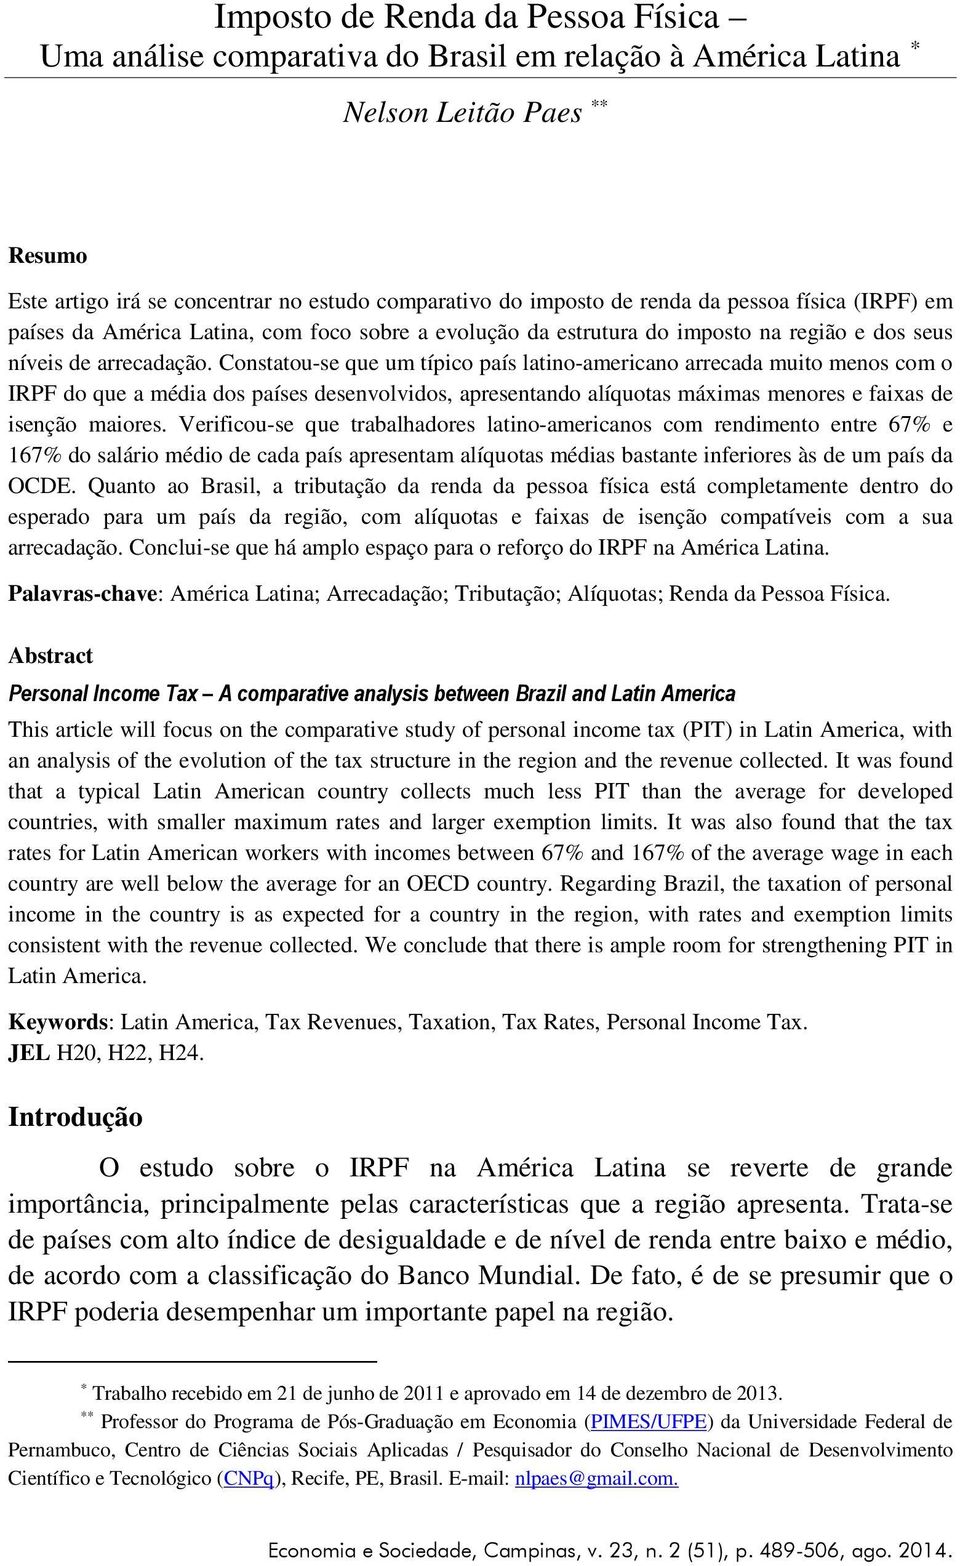 Constatou-se que um típico país latino-americano arrecada muito menos com o IRPF do que a média dos países desenvolvidos, apresentando alíquotas máximas menores e faixas de isenção maiores.